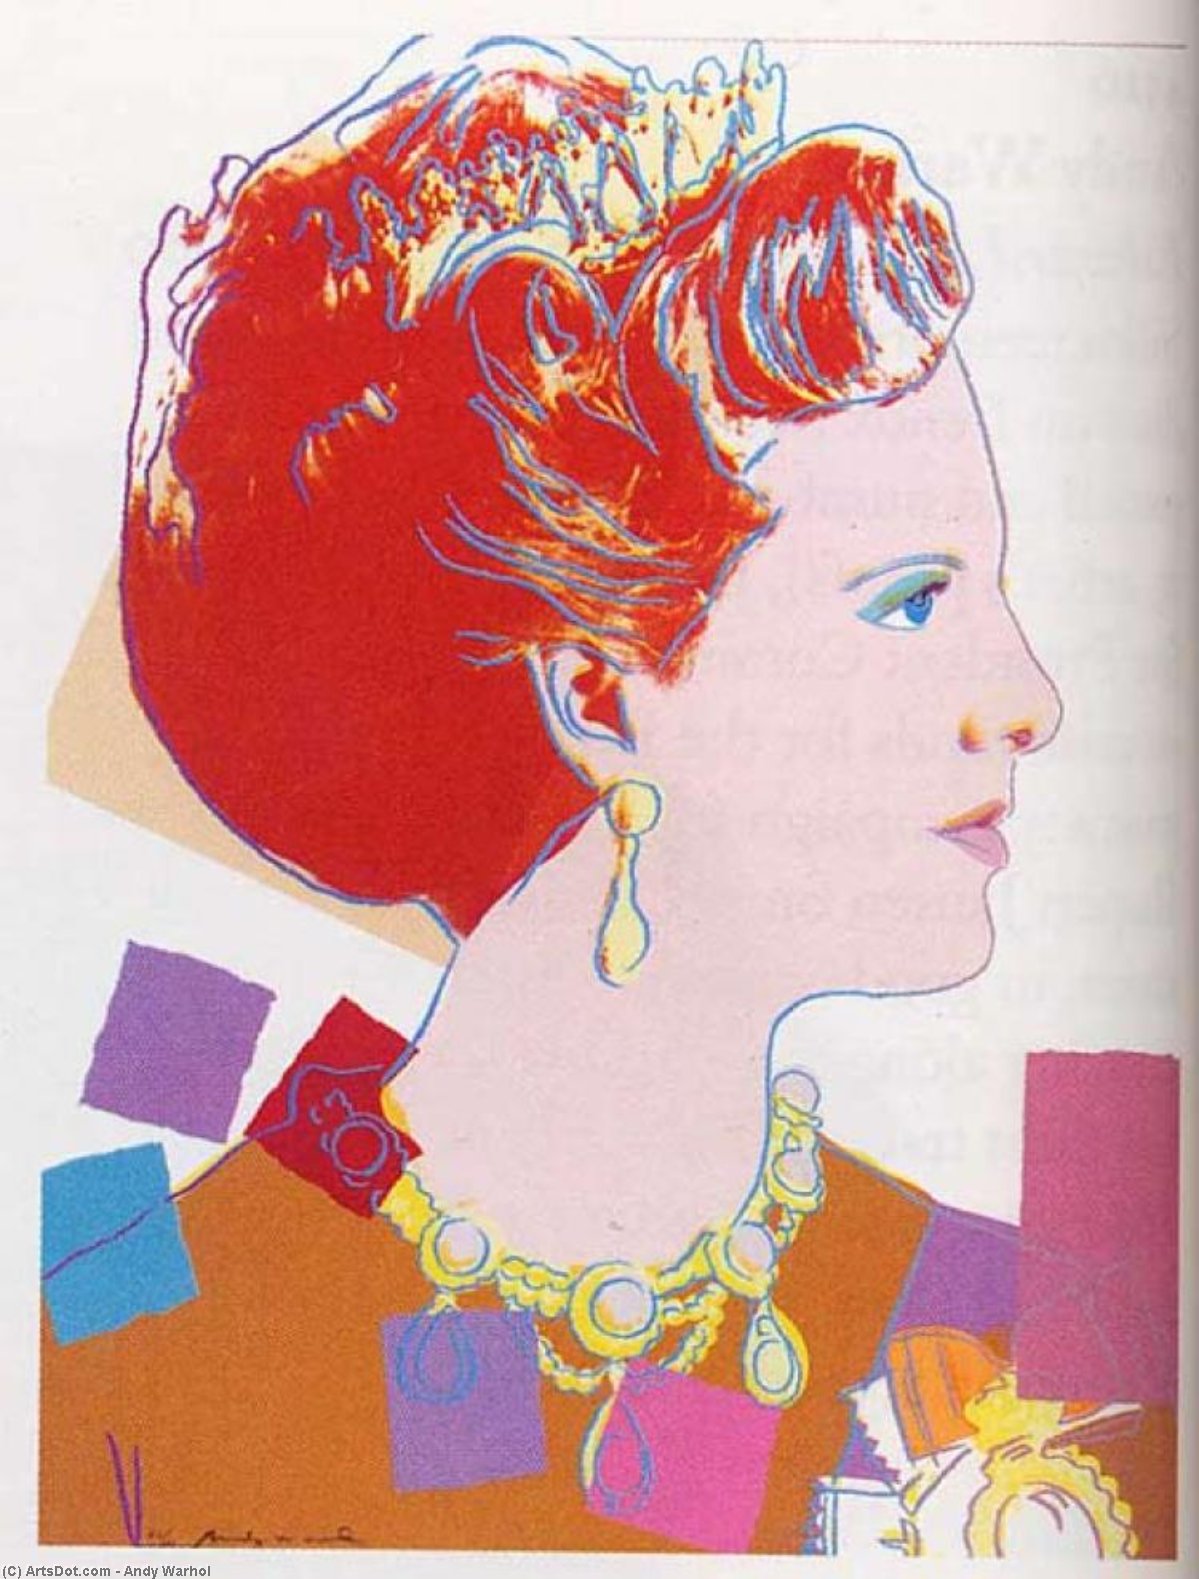 WikiOO.org - Энциклопедия изобразительного искусства - Живопись, Картины  Andy Warhol - Королева Маргрете II Дании